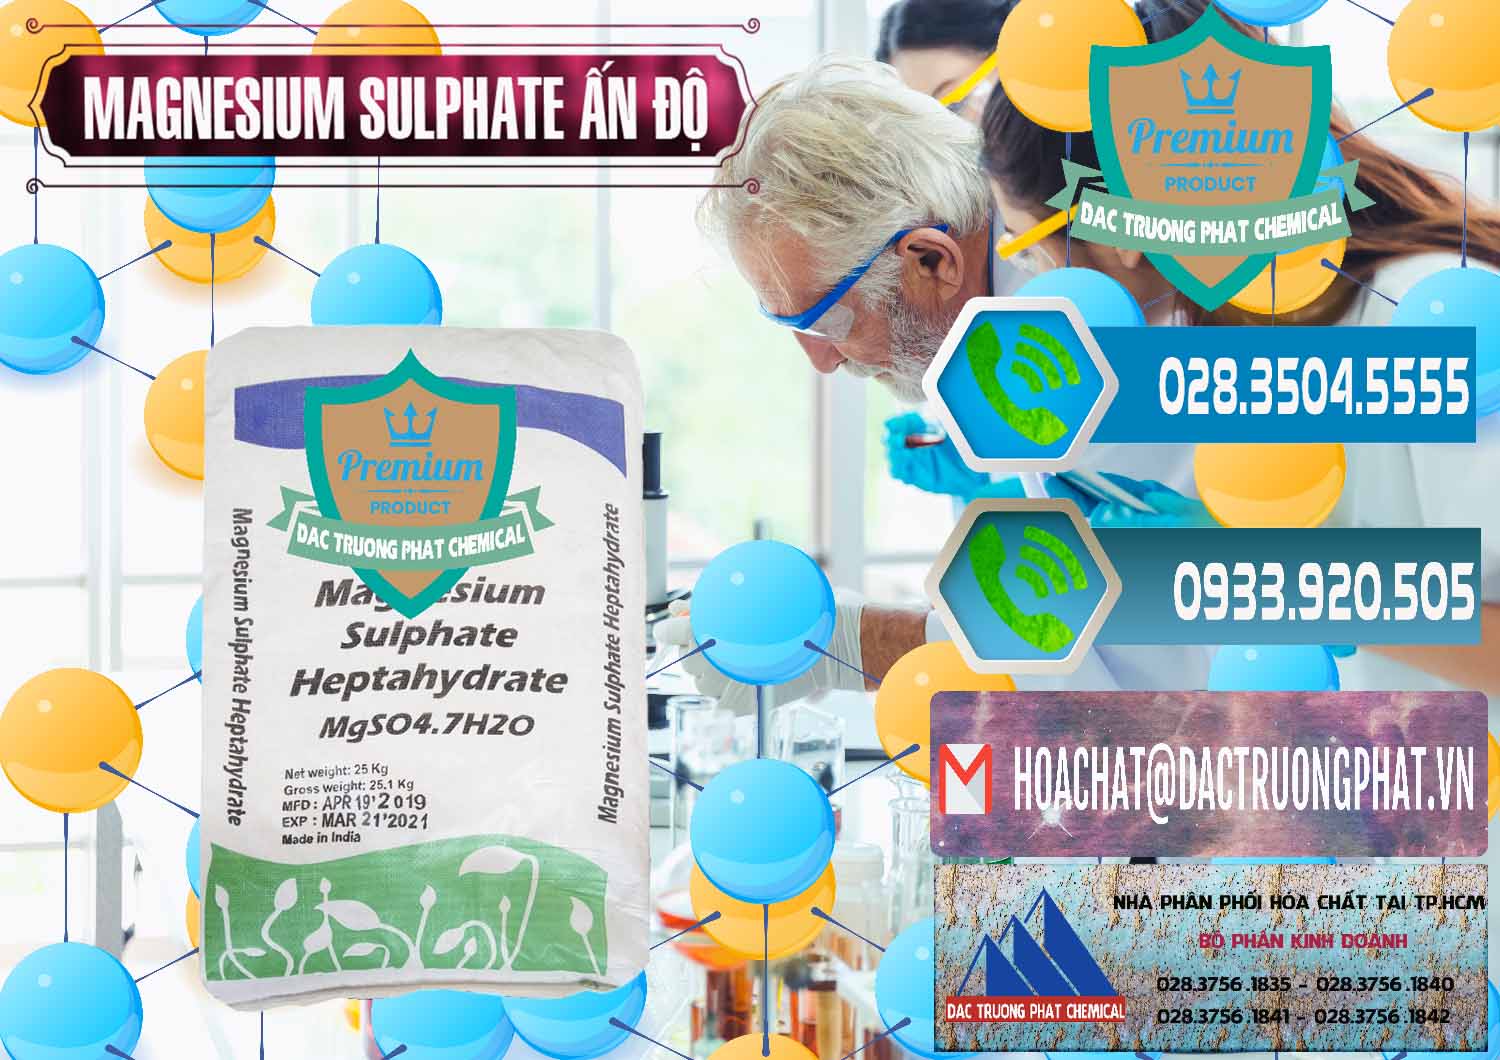 Cty chuyên nhập khẩu và bán MGSO4.7H2O – Magnesium Sulphate Heptahydrate Ấn Độ India - 0362 - Công ty phân phối _ cung ứng hóa chất tại TP.HCM - congtyhoachat.net